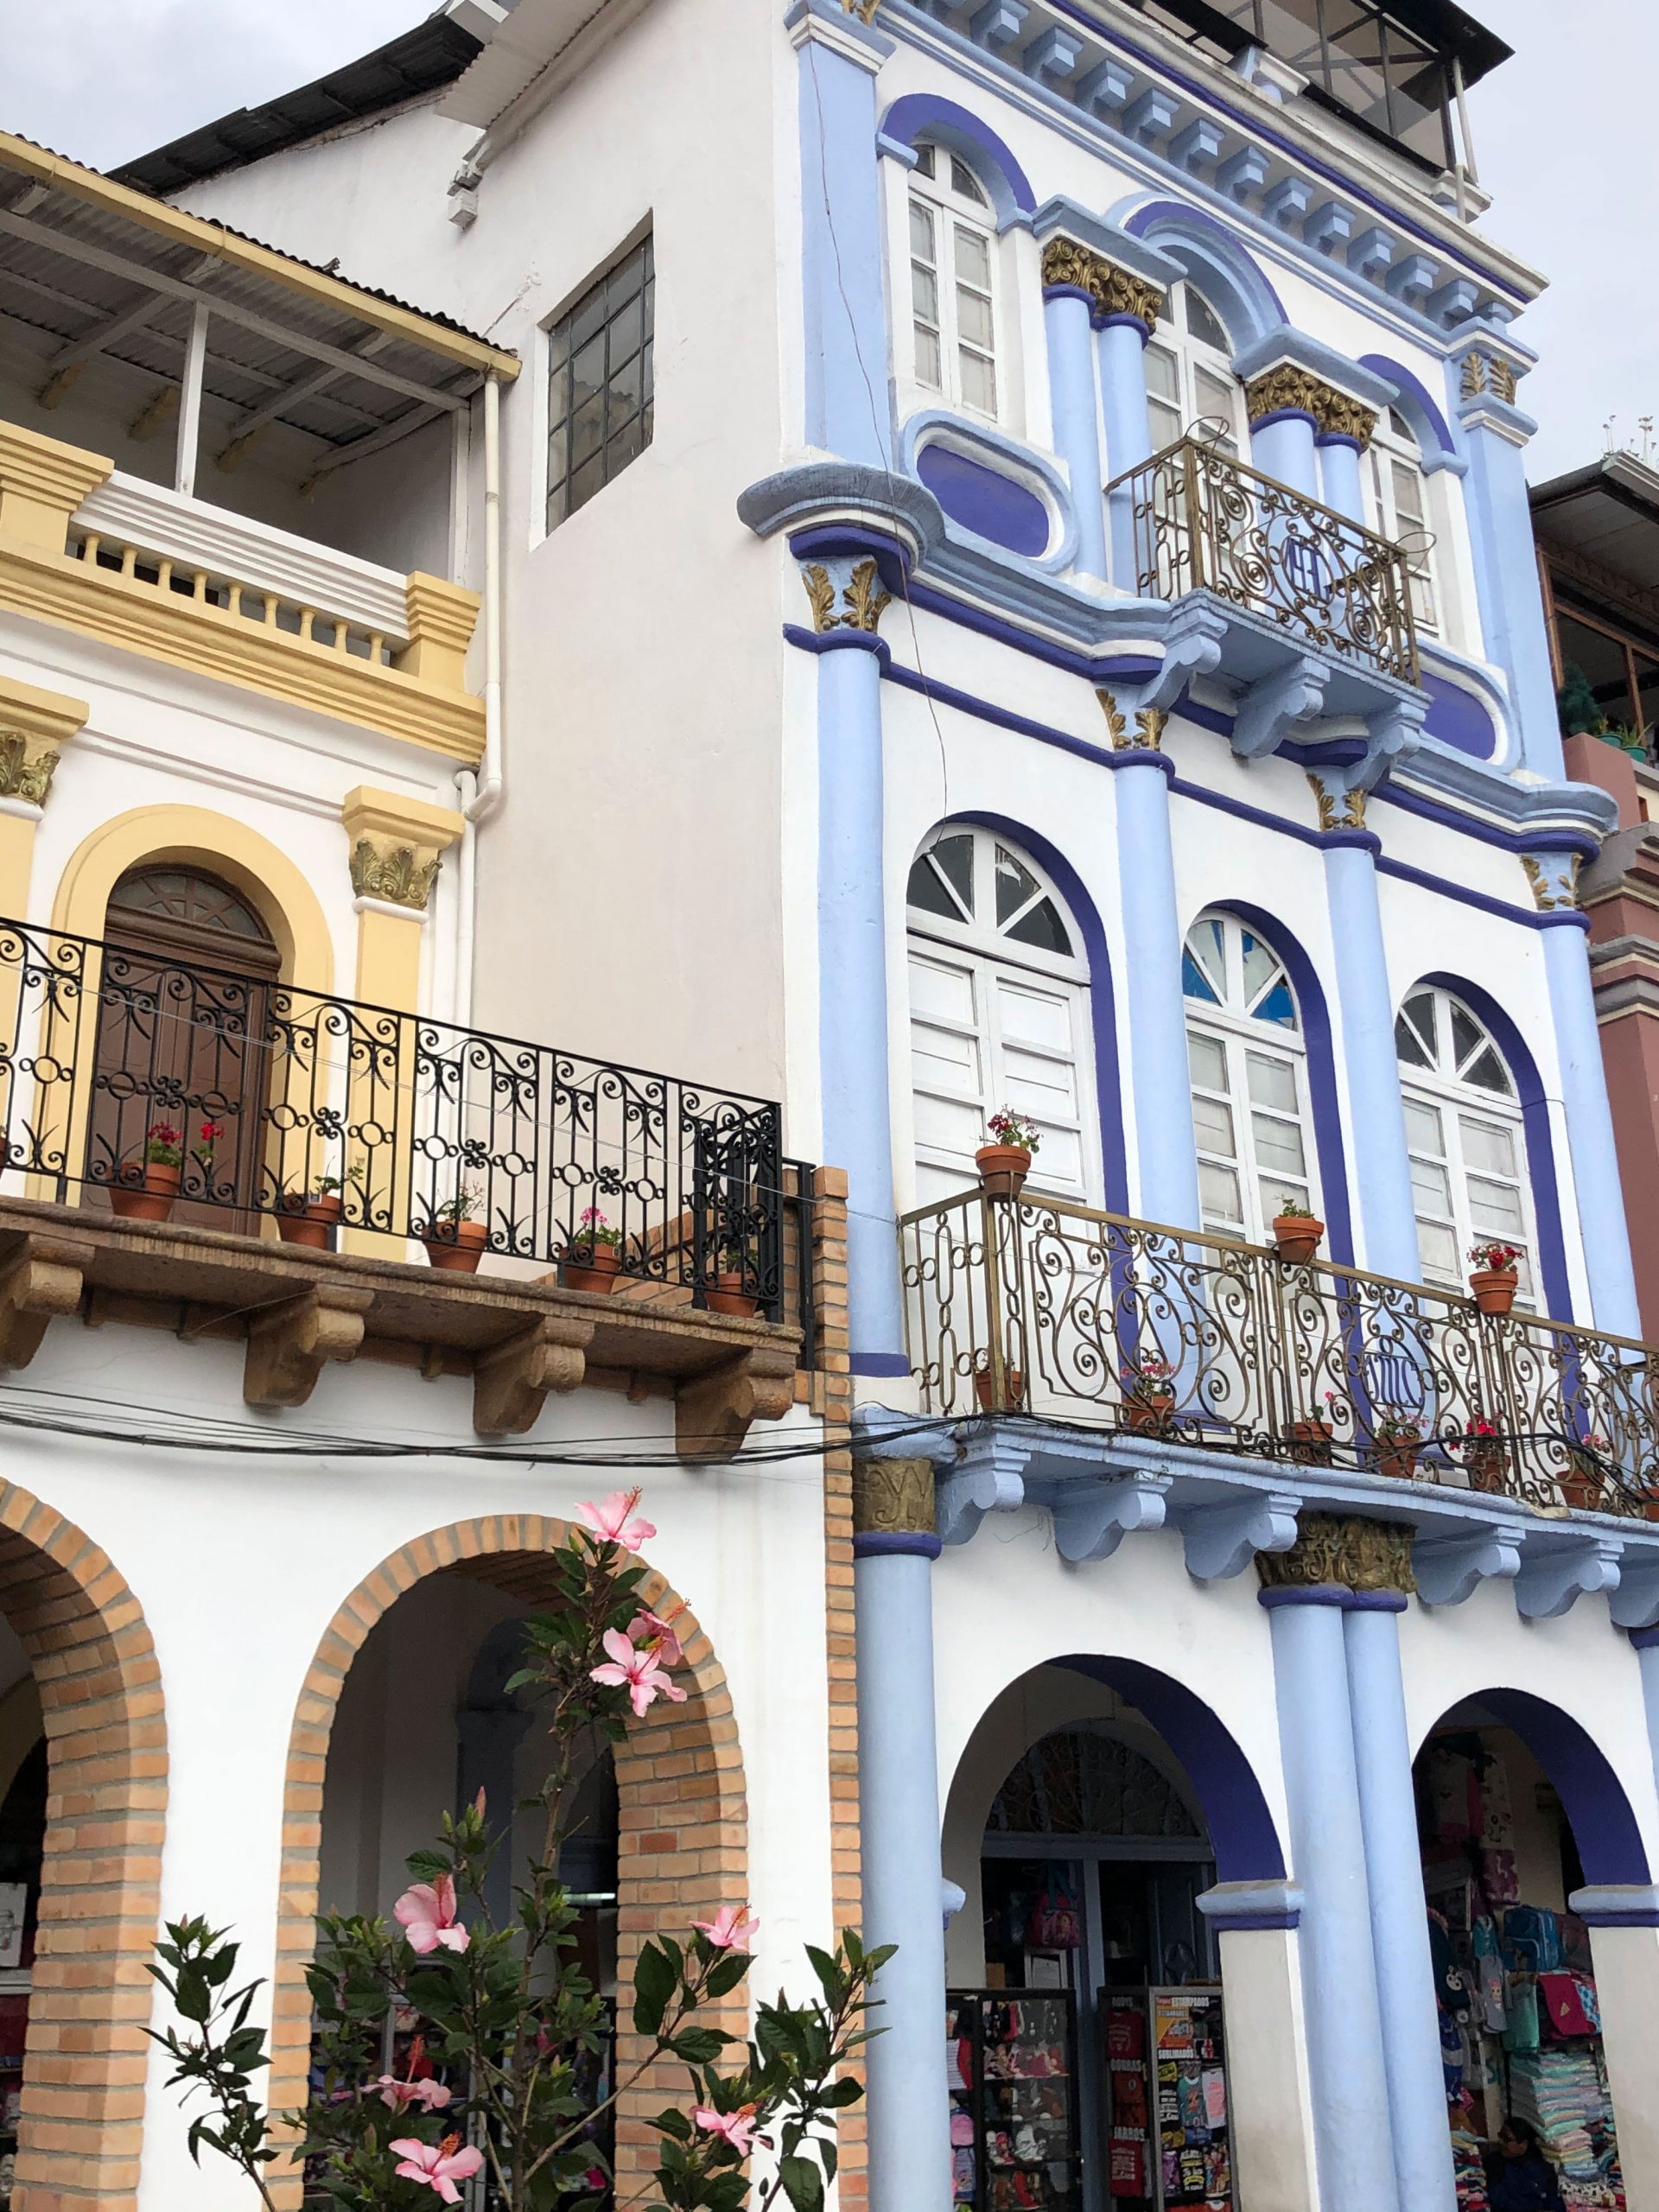 Bunte Hausfassaden in der Altstadt Cuencas.